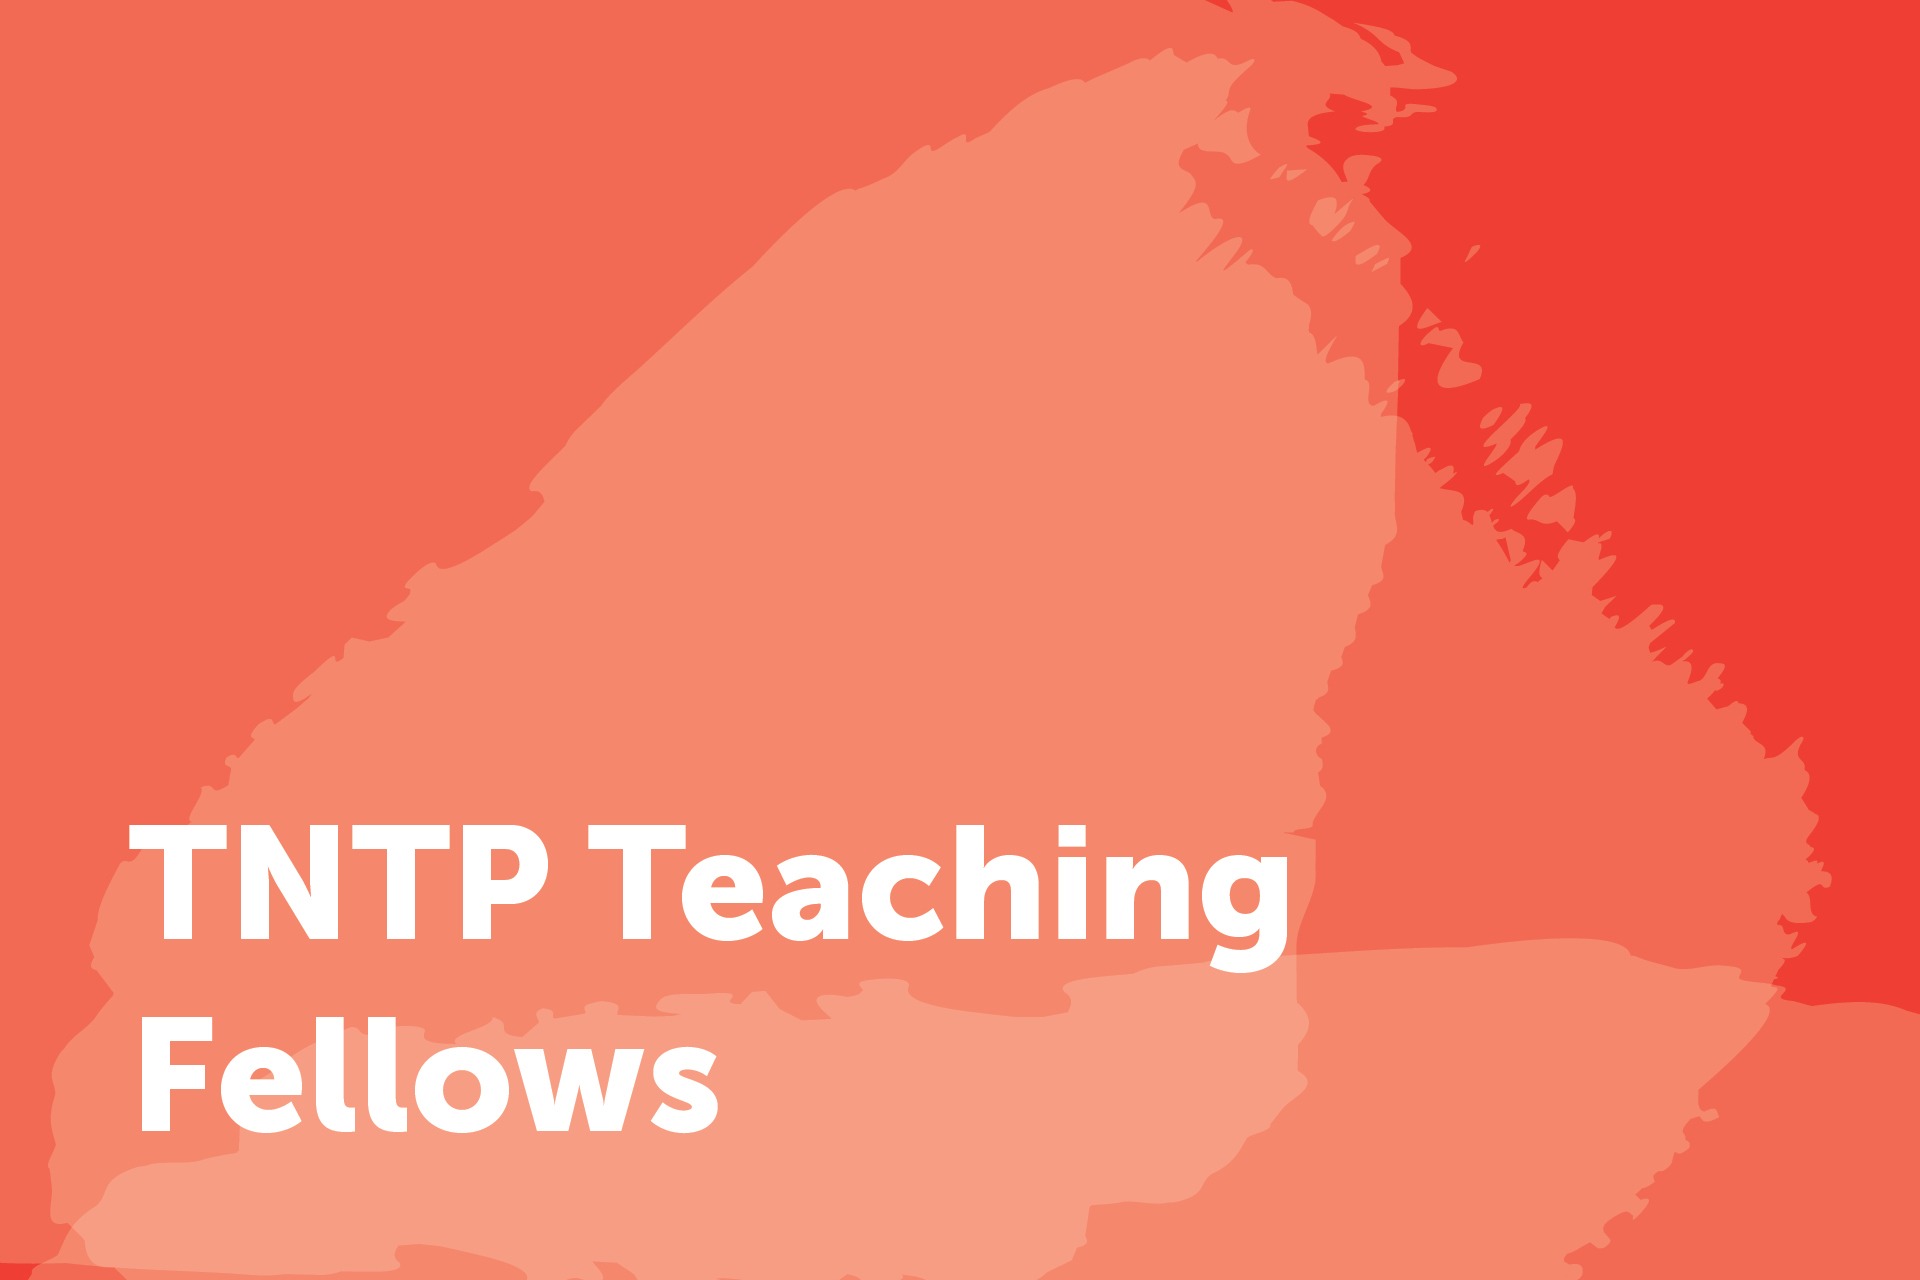 TNTP Teaching Fellows